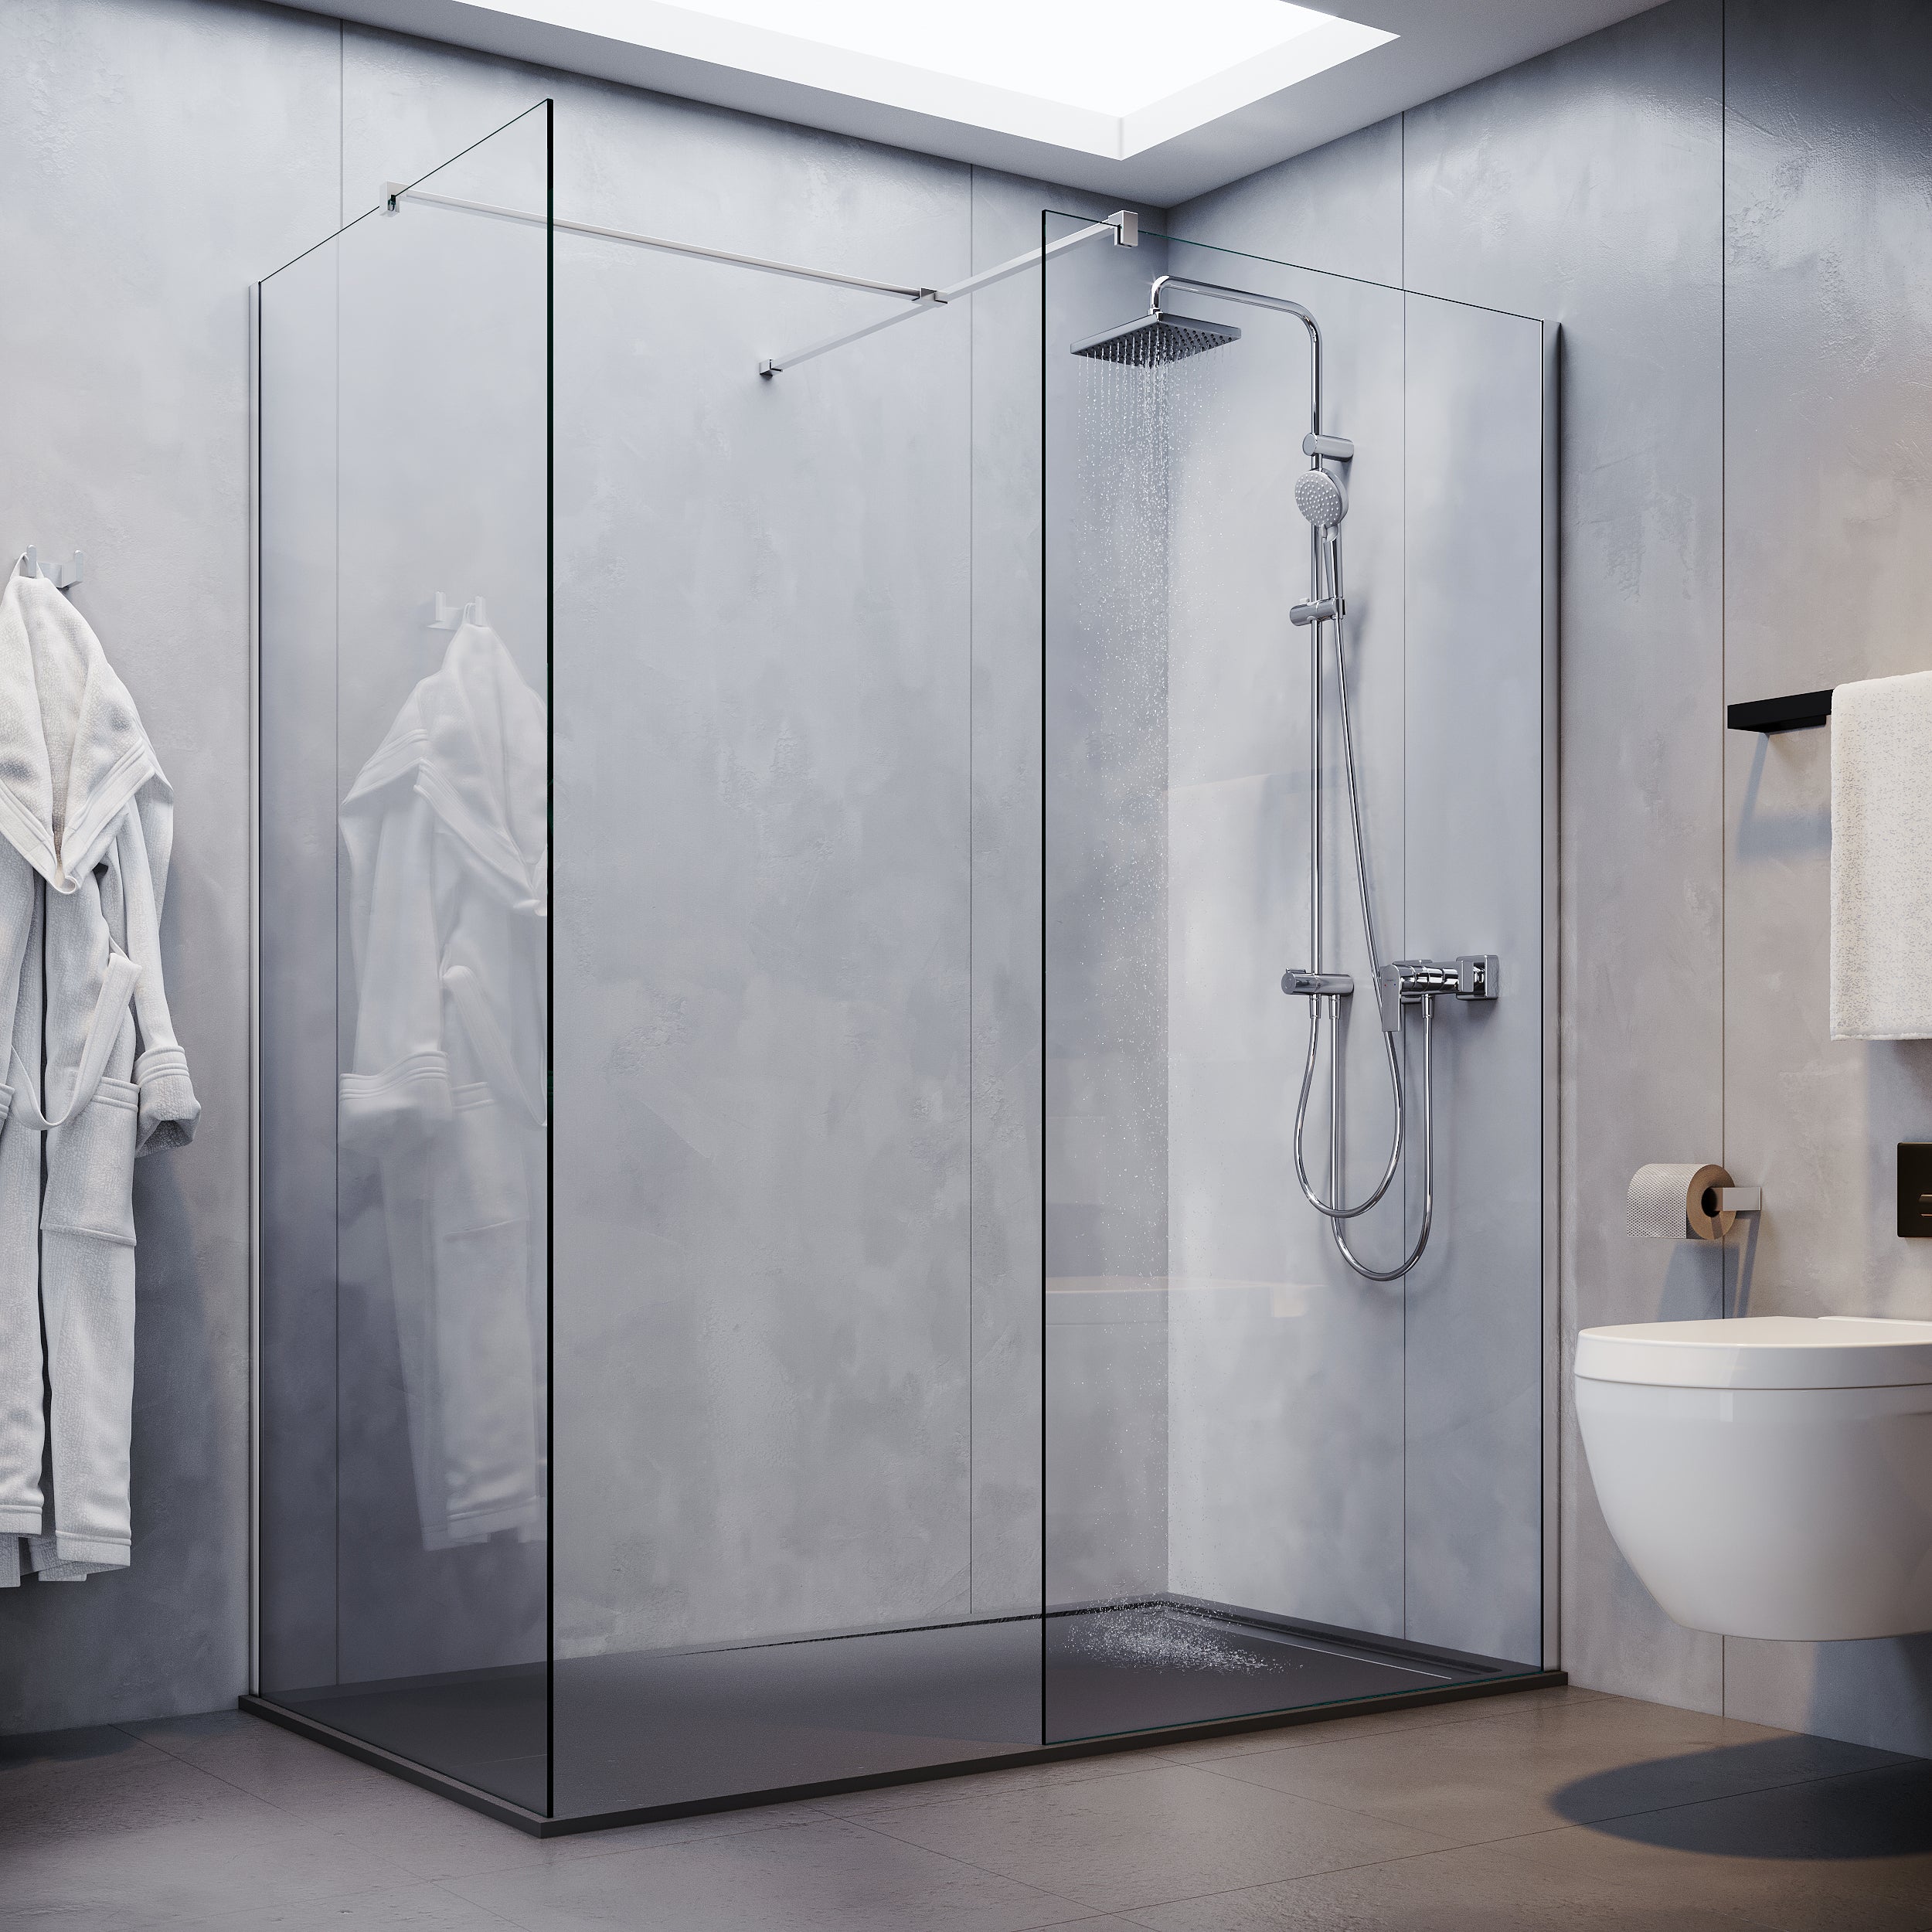 Image of SONNI Begehbare Dusche Duschabtrennung Duschwand Duschkabine 8mm Nano Glas Duschwand mit/ohne schwenkbare Tür Walk in Dusche